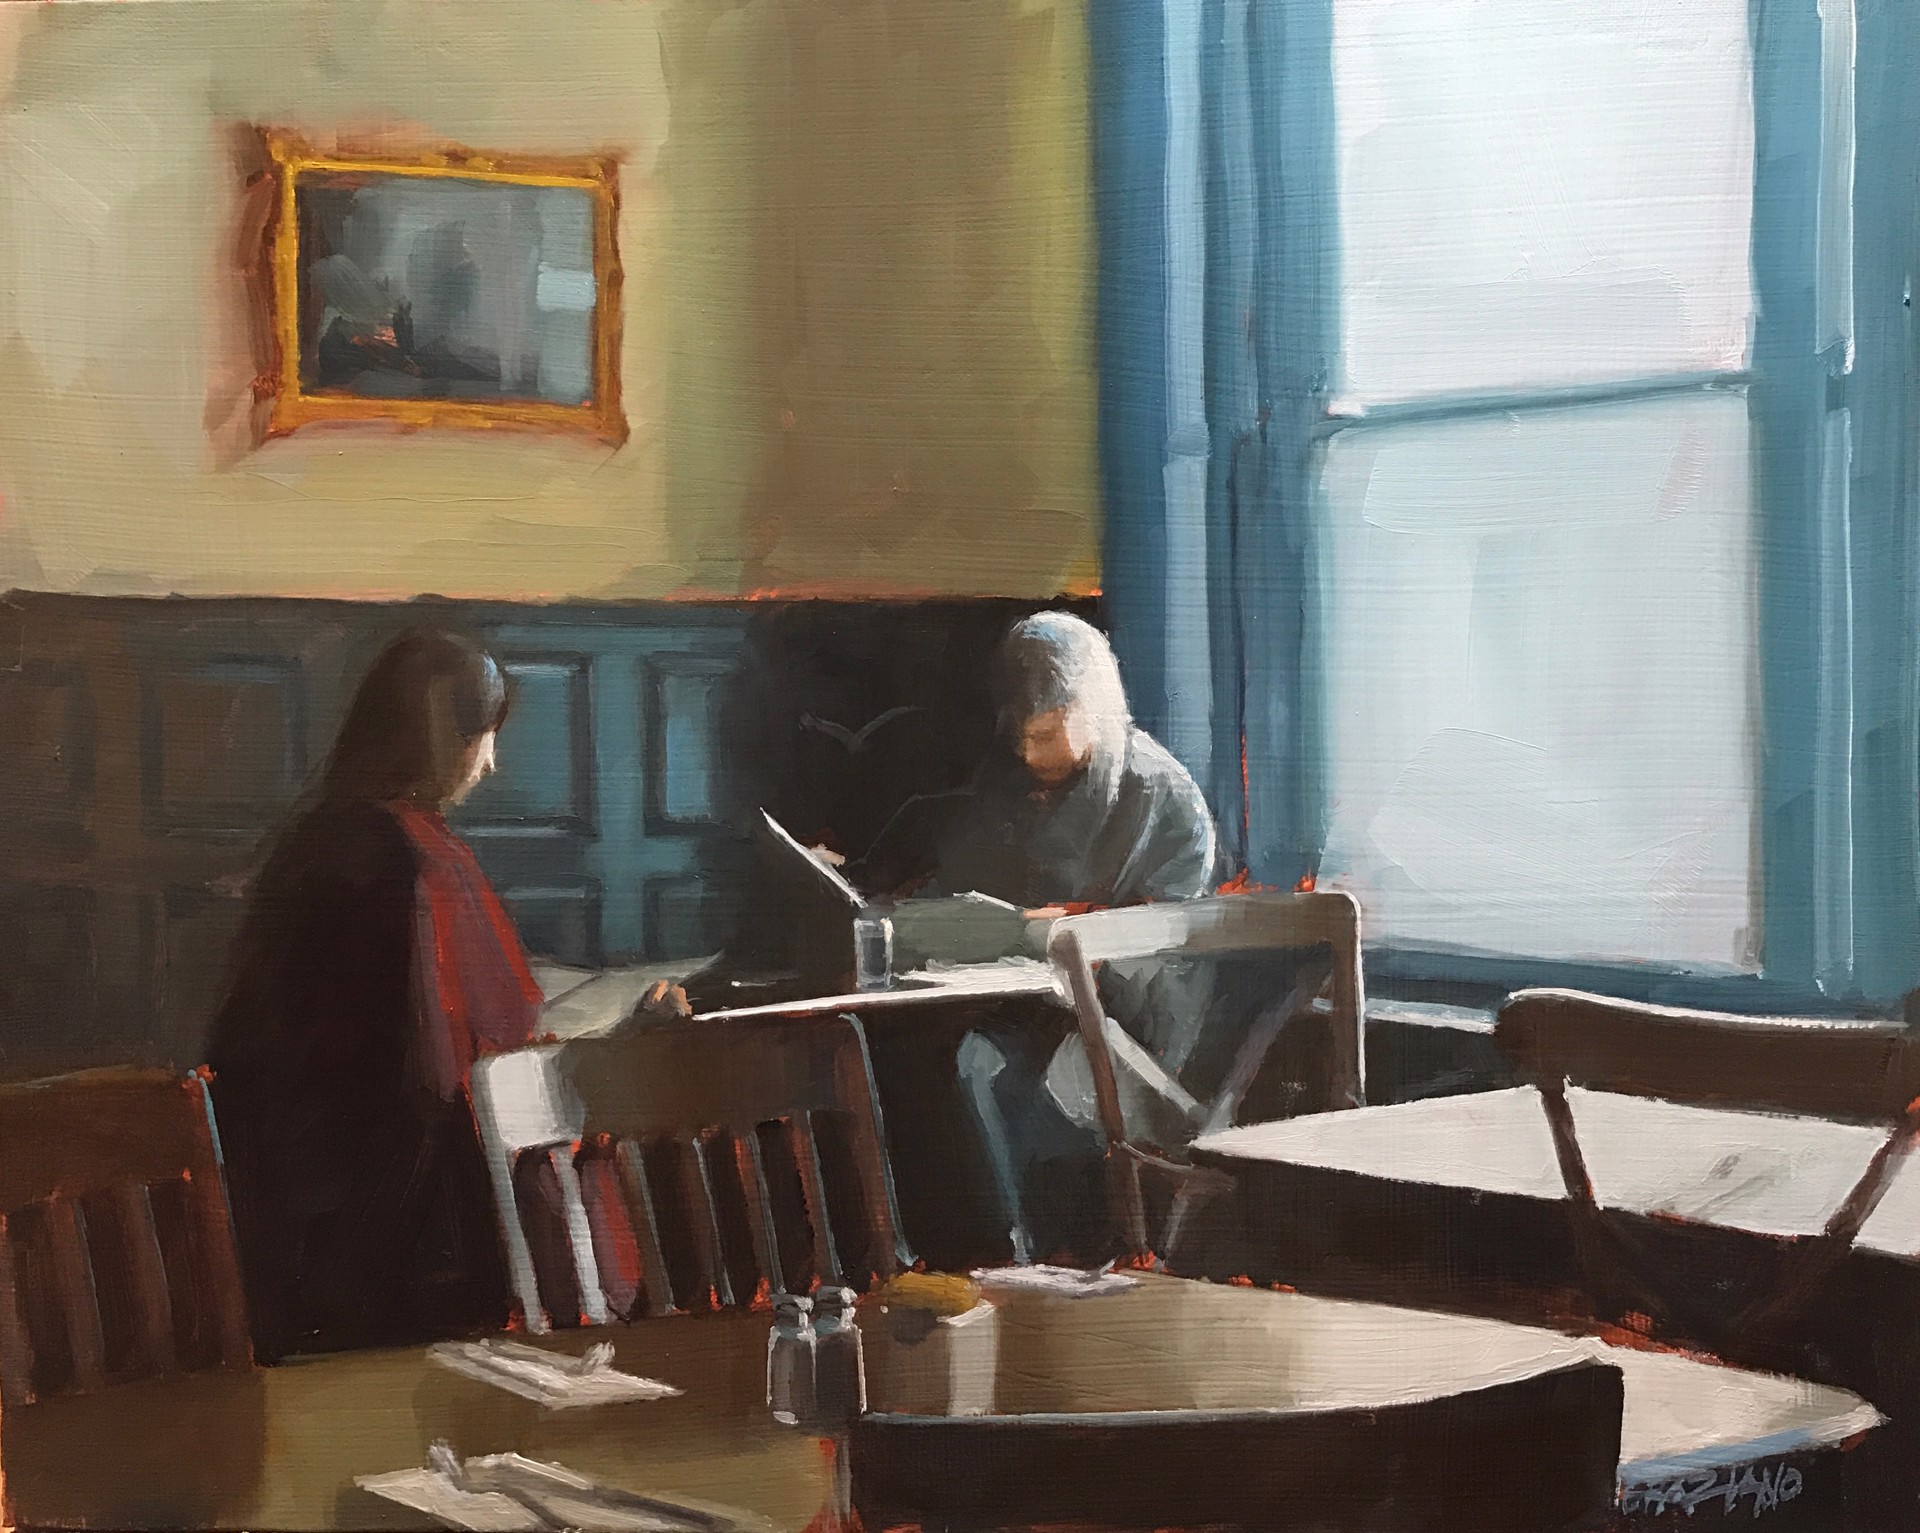 Breakfast at Cafe Le Perche by Dan Graziano